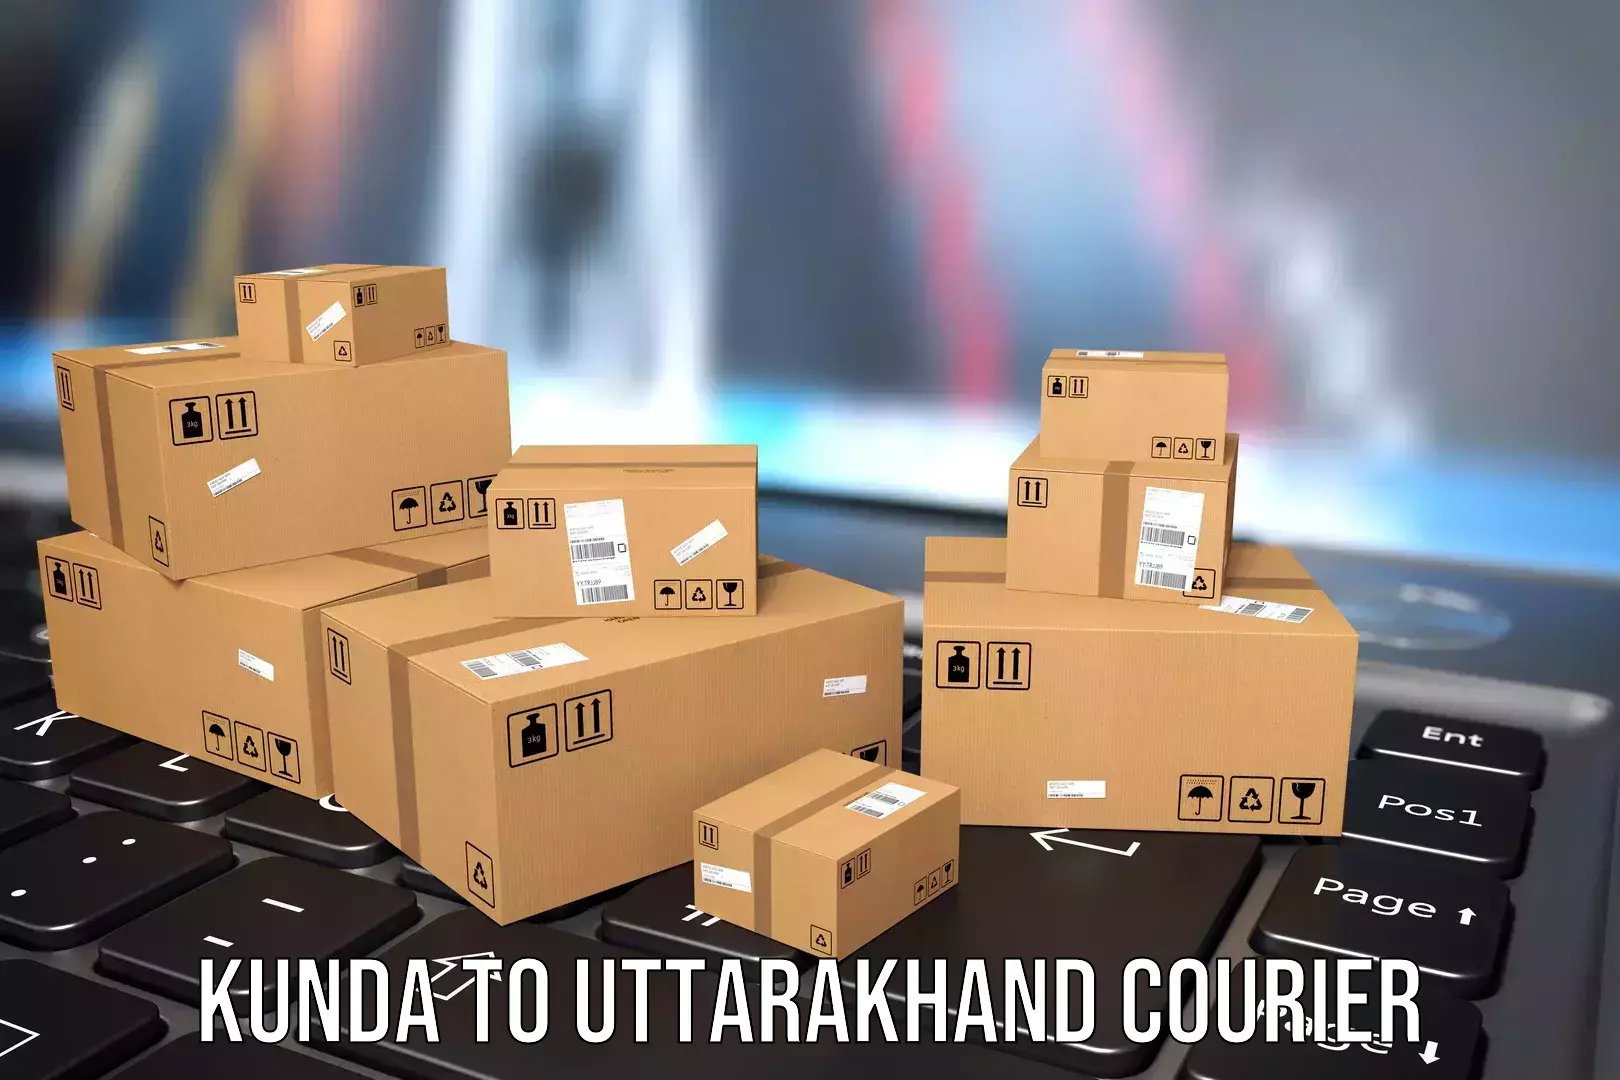 Urgent luggage shipment in Kunda to Uttarakhand